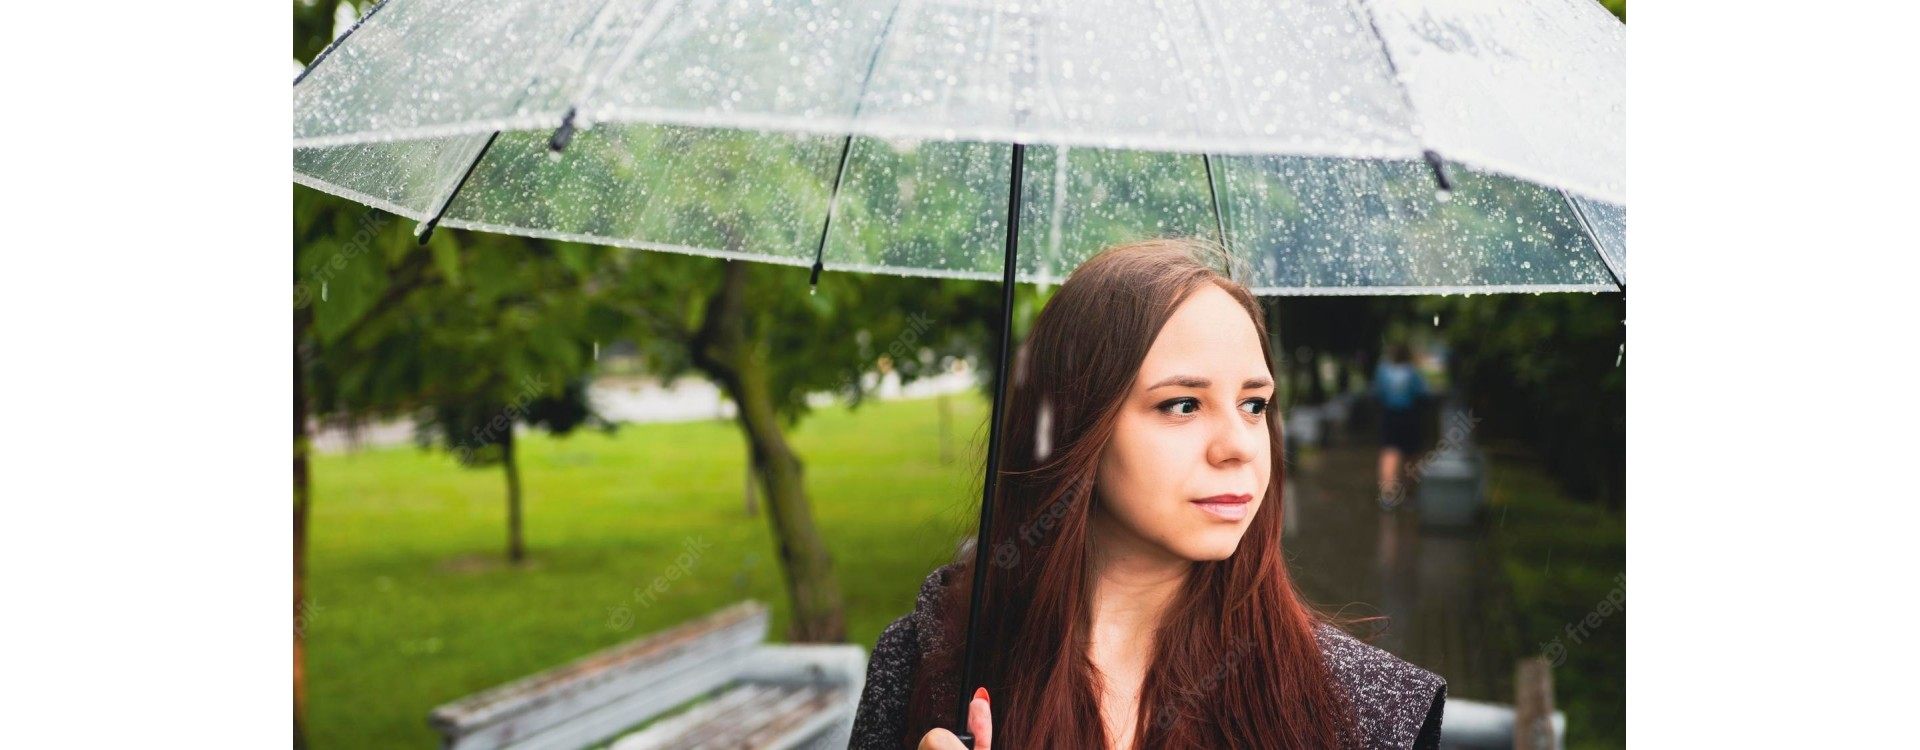 Cheveux : comment éviter les désagréments de la pluie ?